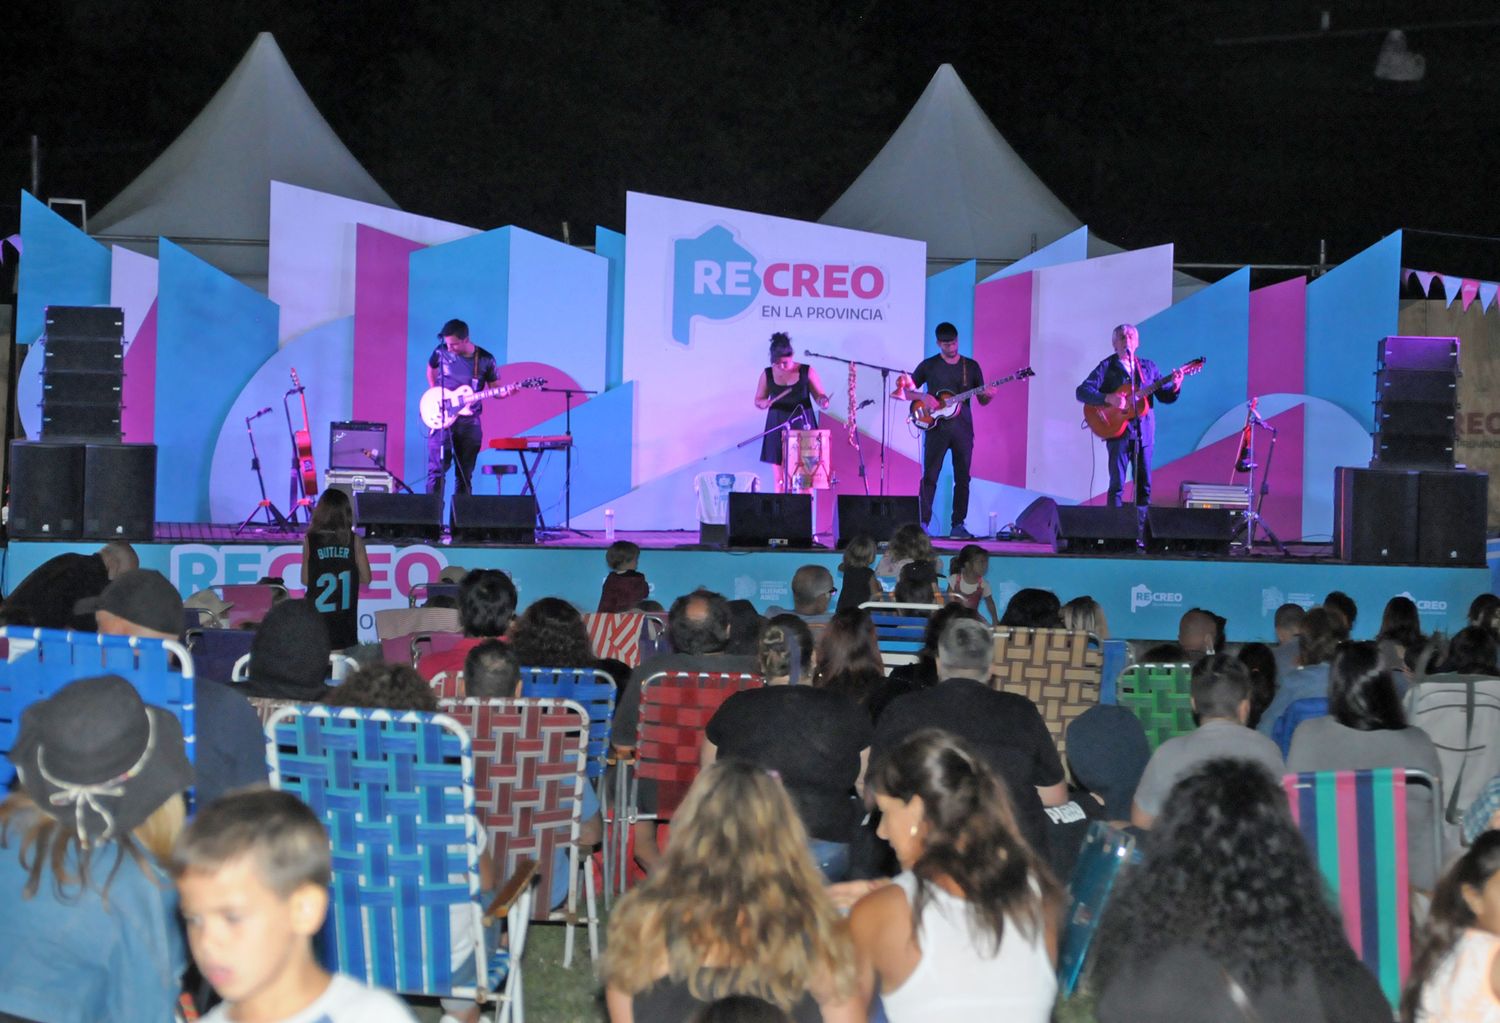 Peteco Carabajal deleitó al público con un show en el Parador Recreo, en el último sábado de enero